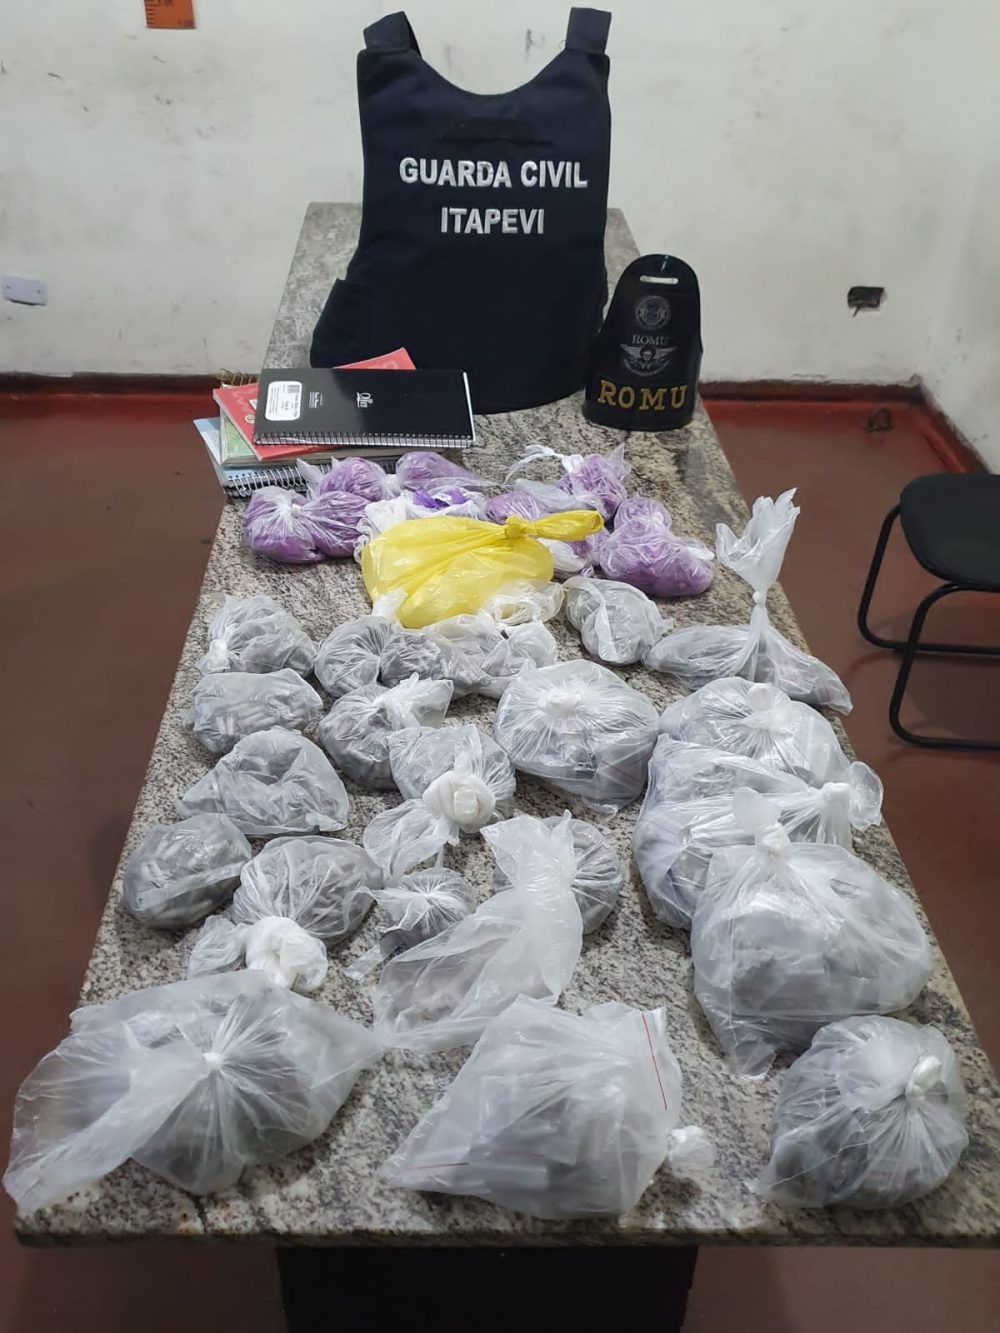 GCM realiza apreensão de drogas em Amador Bueno